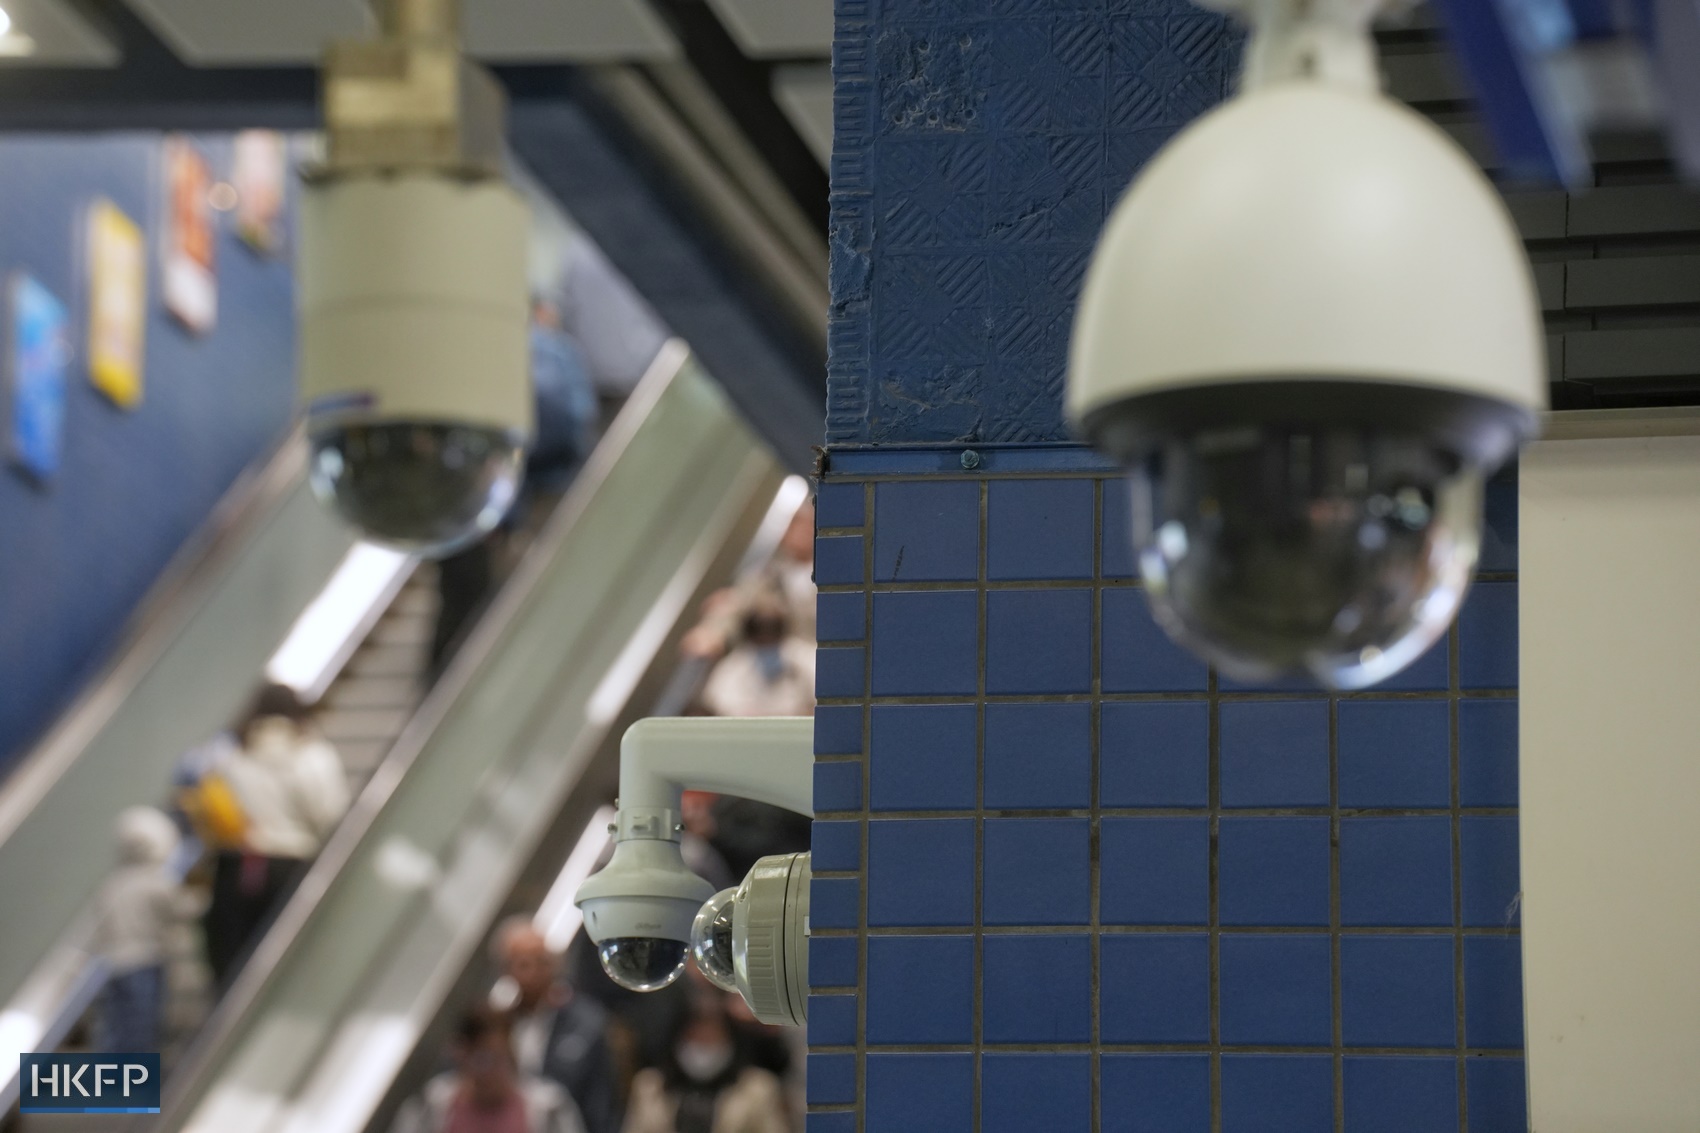 CCTV cameras at Hong Kong's MTR station. File photo: Kyle Lam/HKFP.